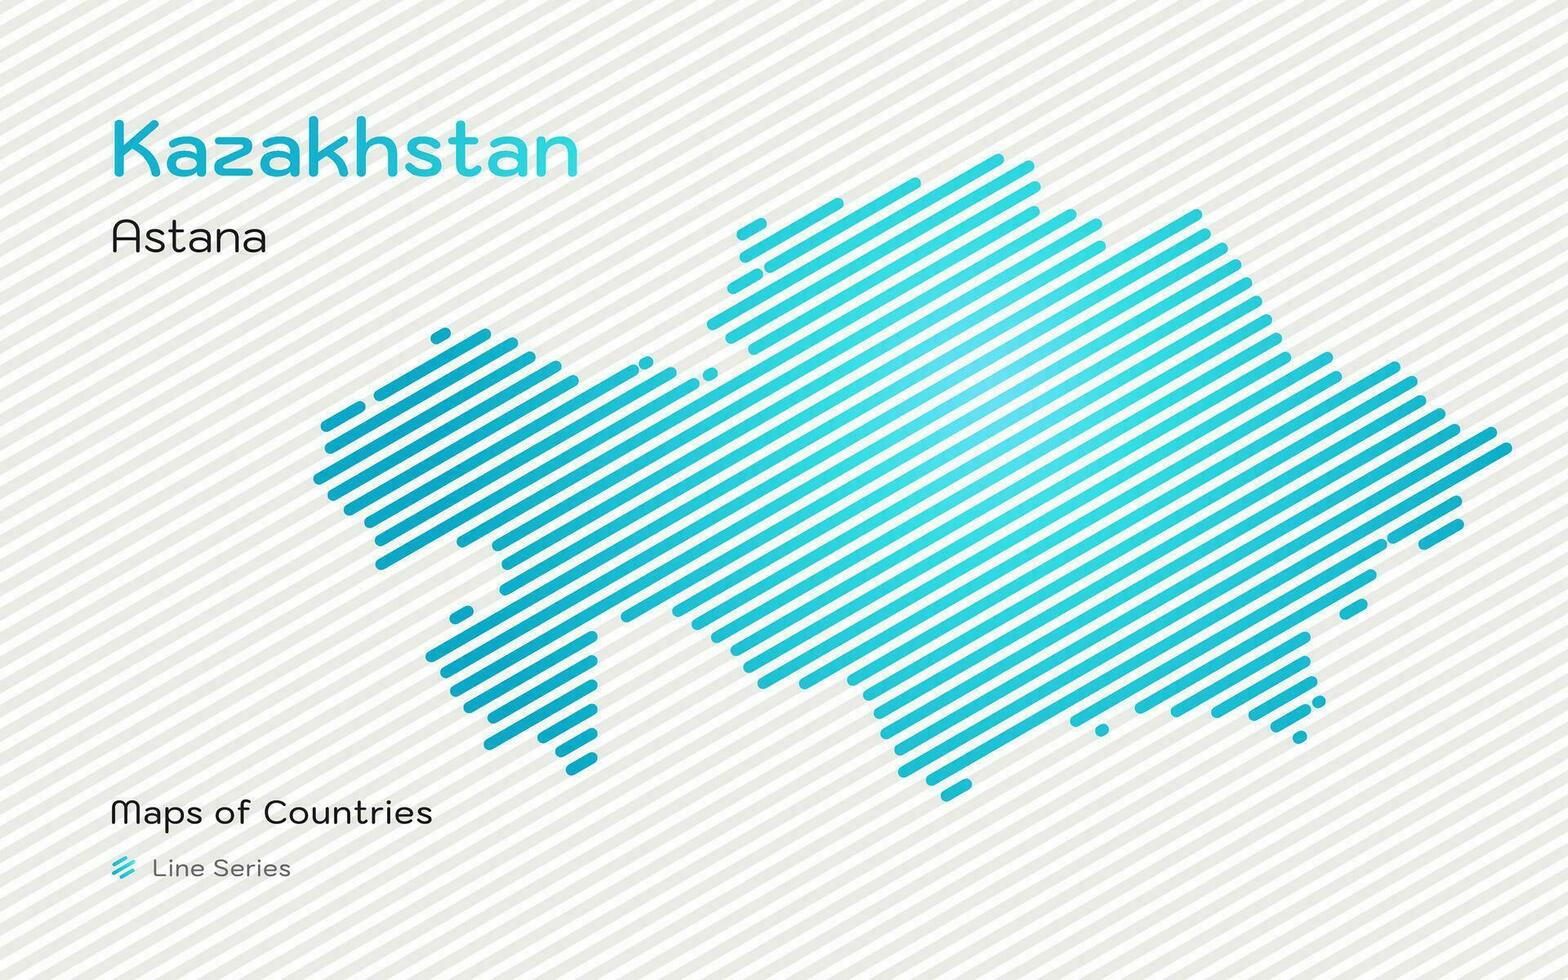 creativo blu carta geografica di kazakistan, Kazakistan, nel oro inclinato Linee modello con capitale di astana vettore